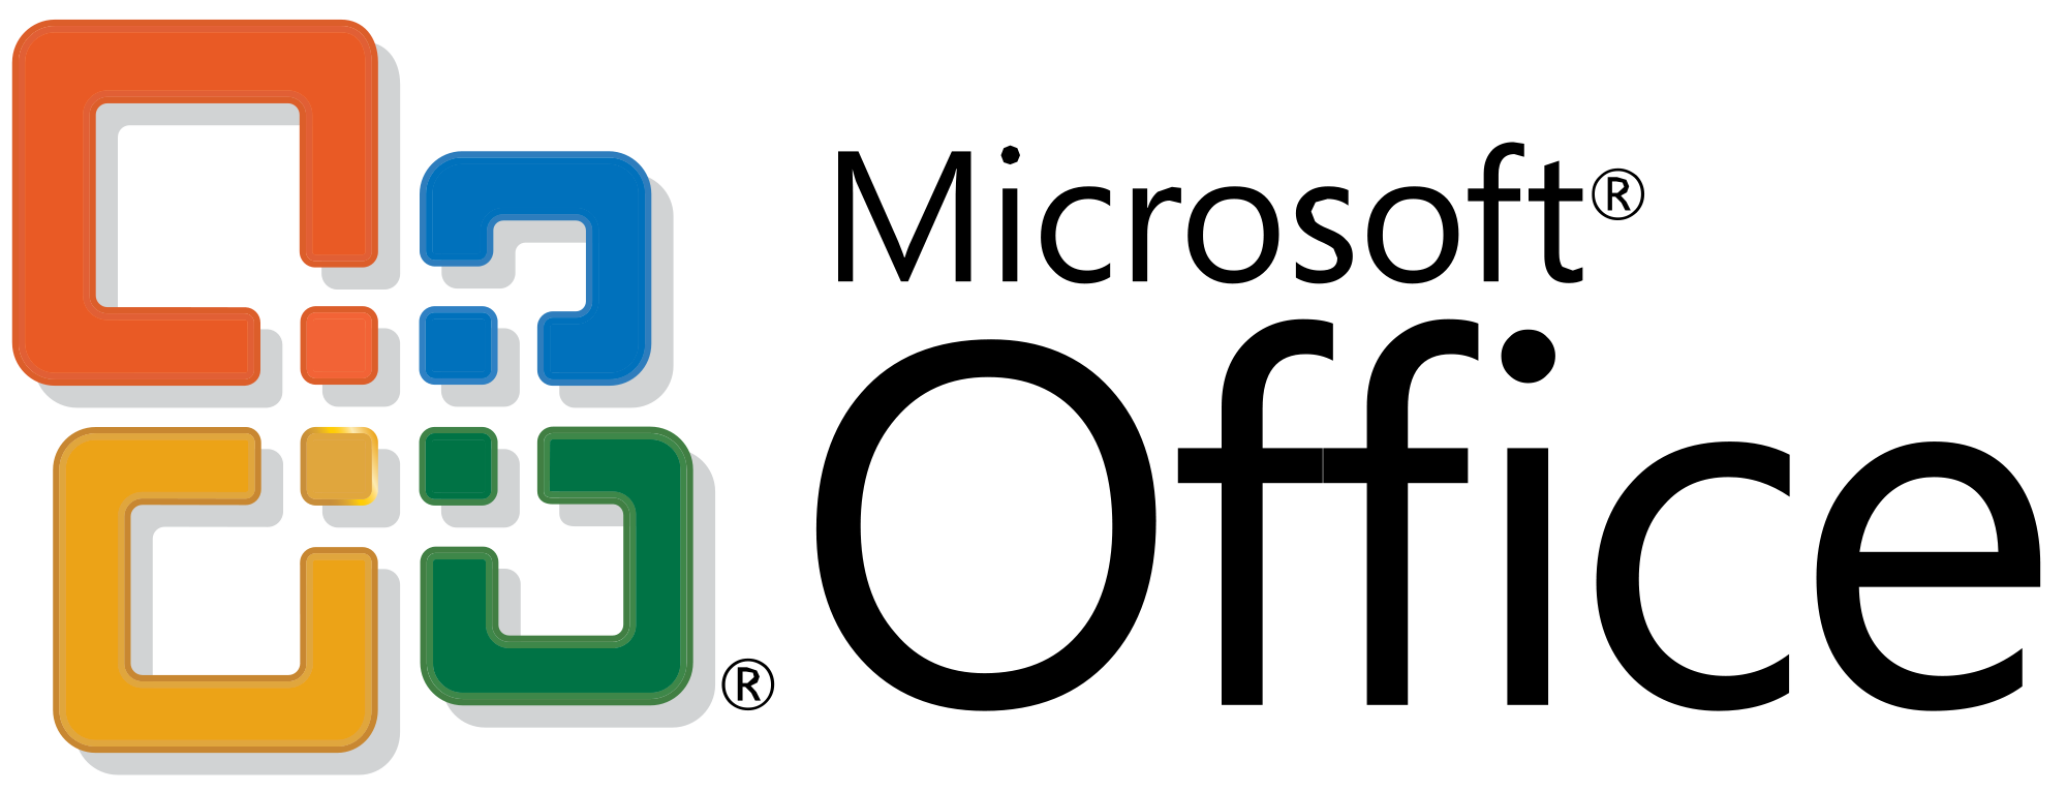 Microsoft 365 Introduces New Logo | eWay-CRM